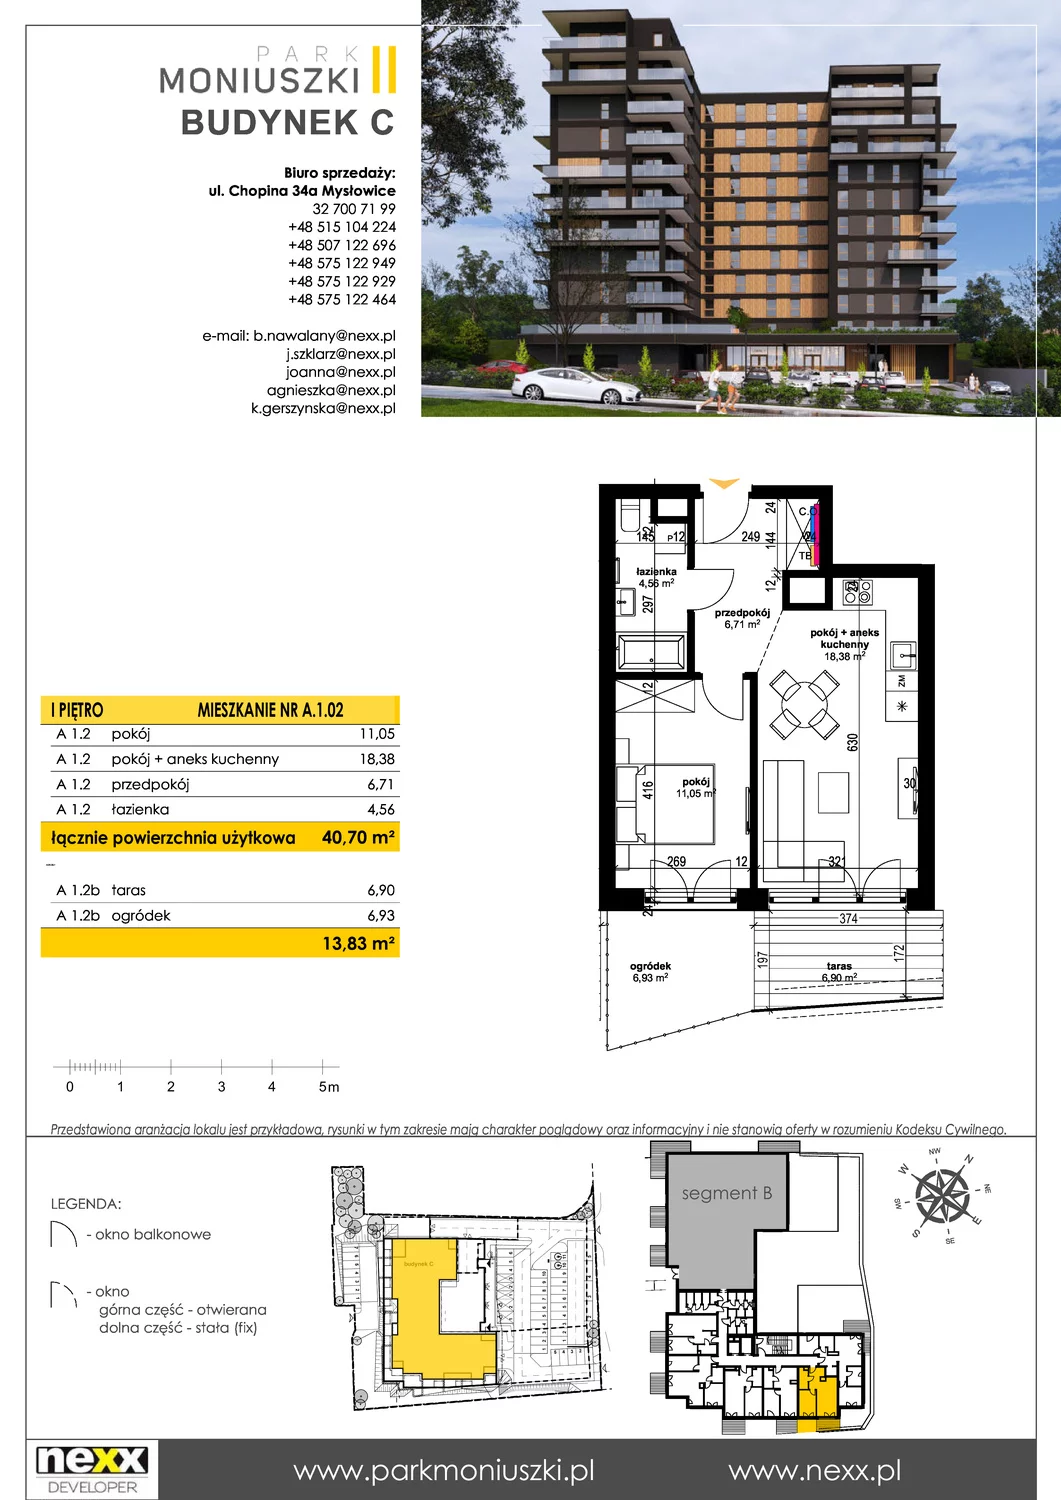 Mieszkanie 40,70 m², piętro 1, oferta nr A 1.02, Osiedle Park Moniuszki, Mysłowice, ul. Okrzei / Wielka Skotnica